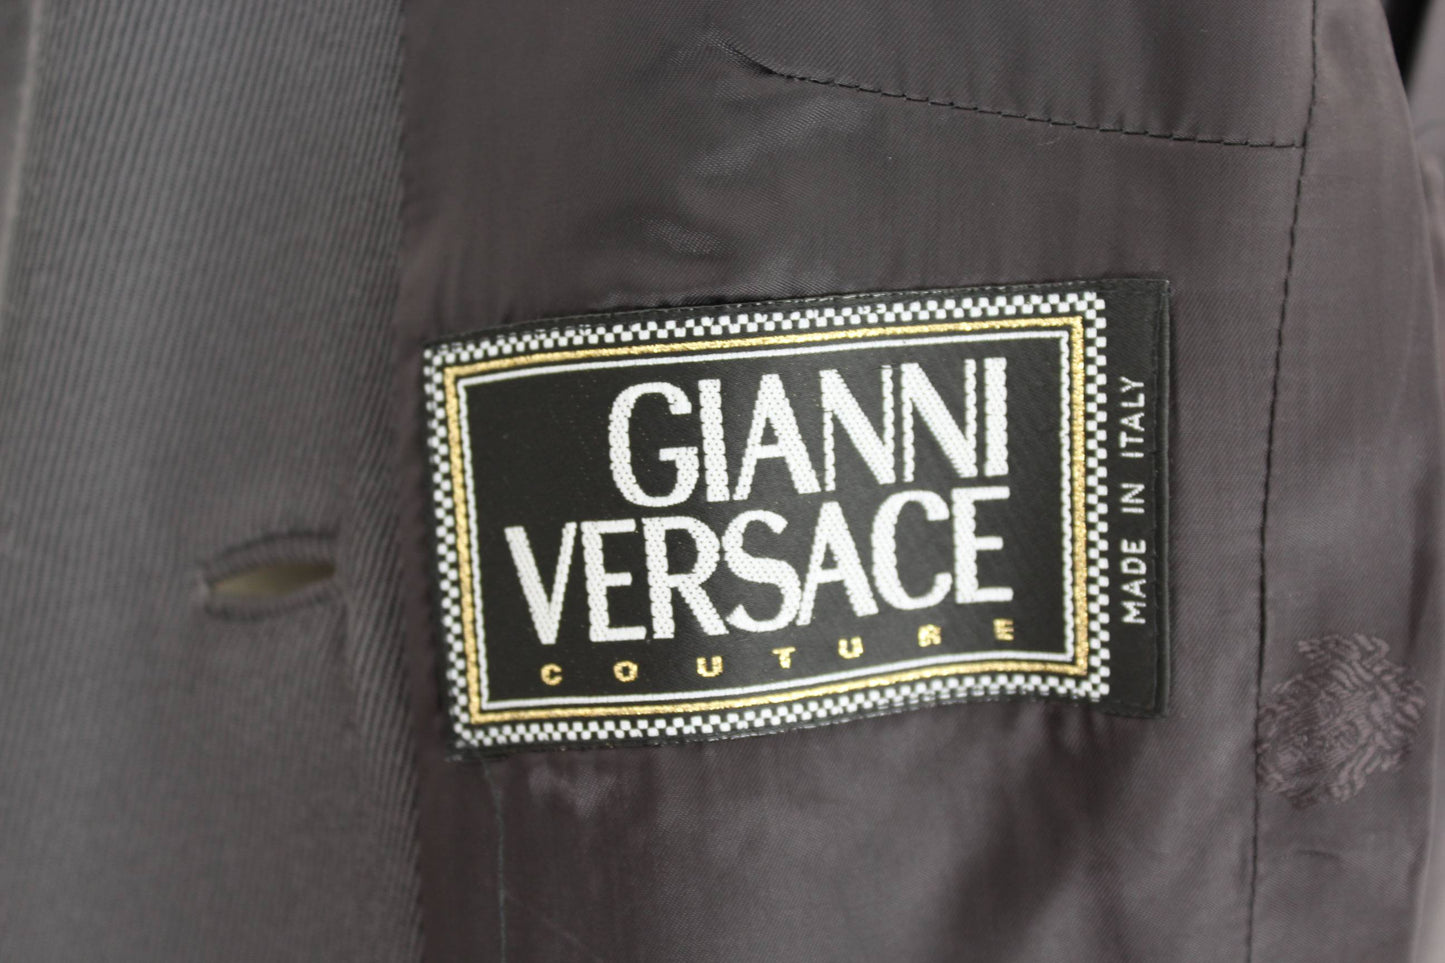 Versace Couture Giacca Vintage Doppiopetto Lana Grigio